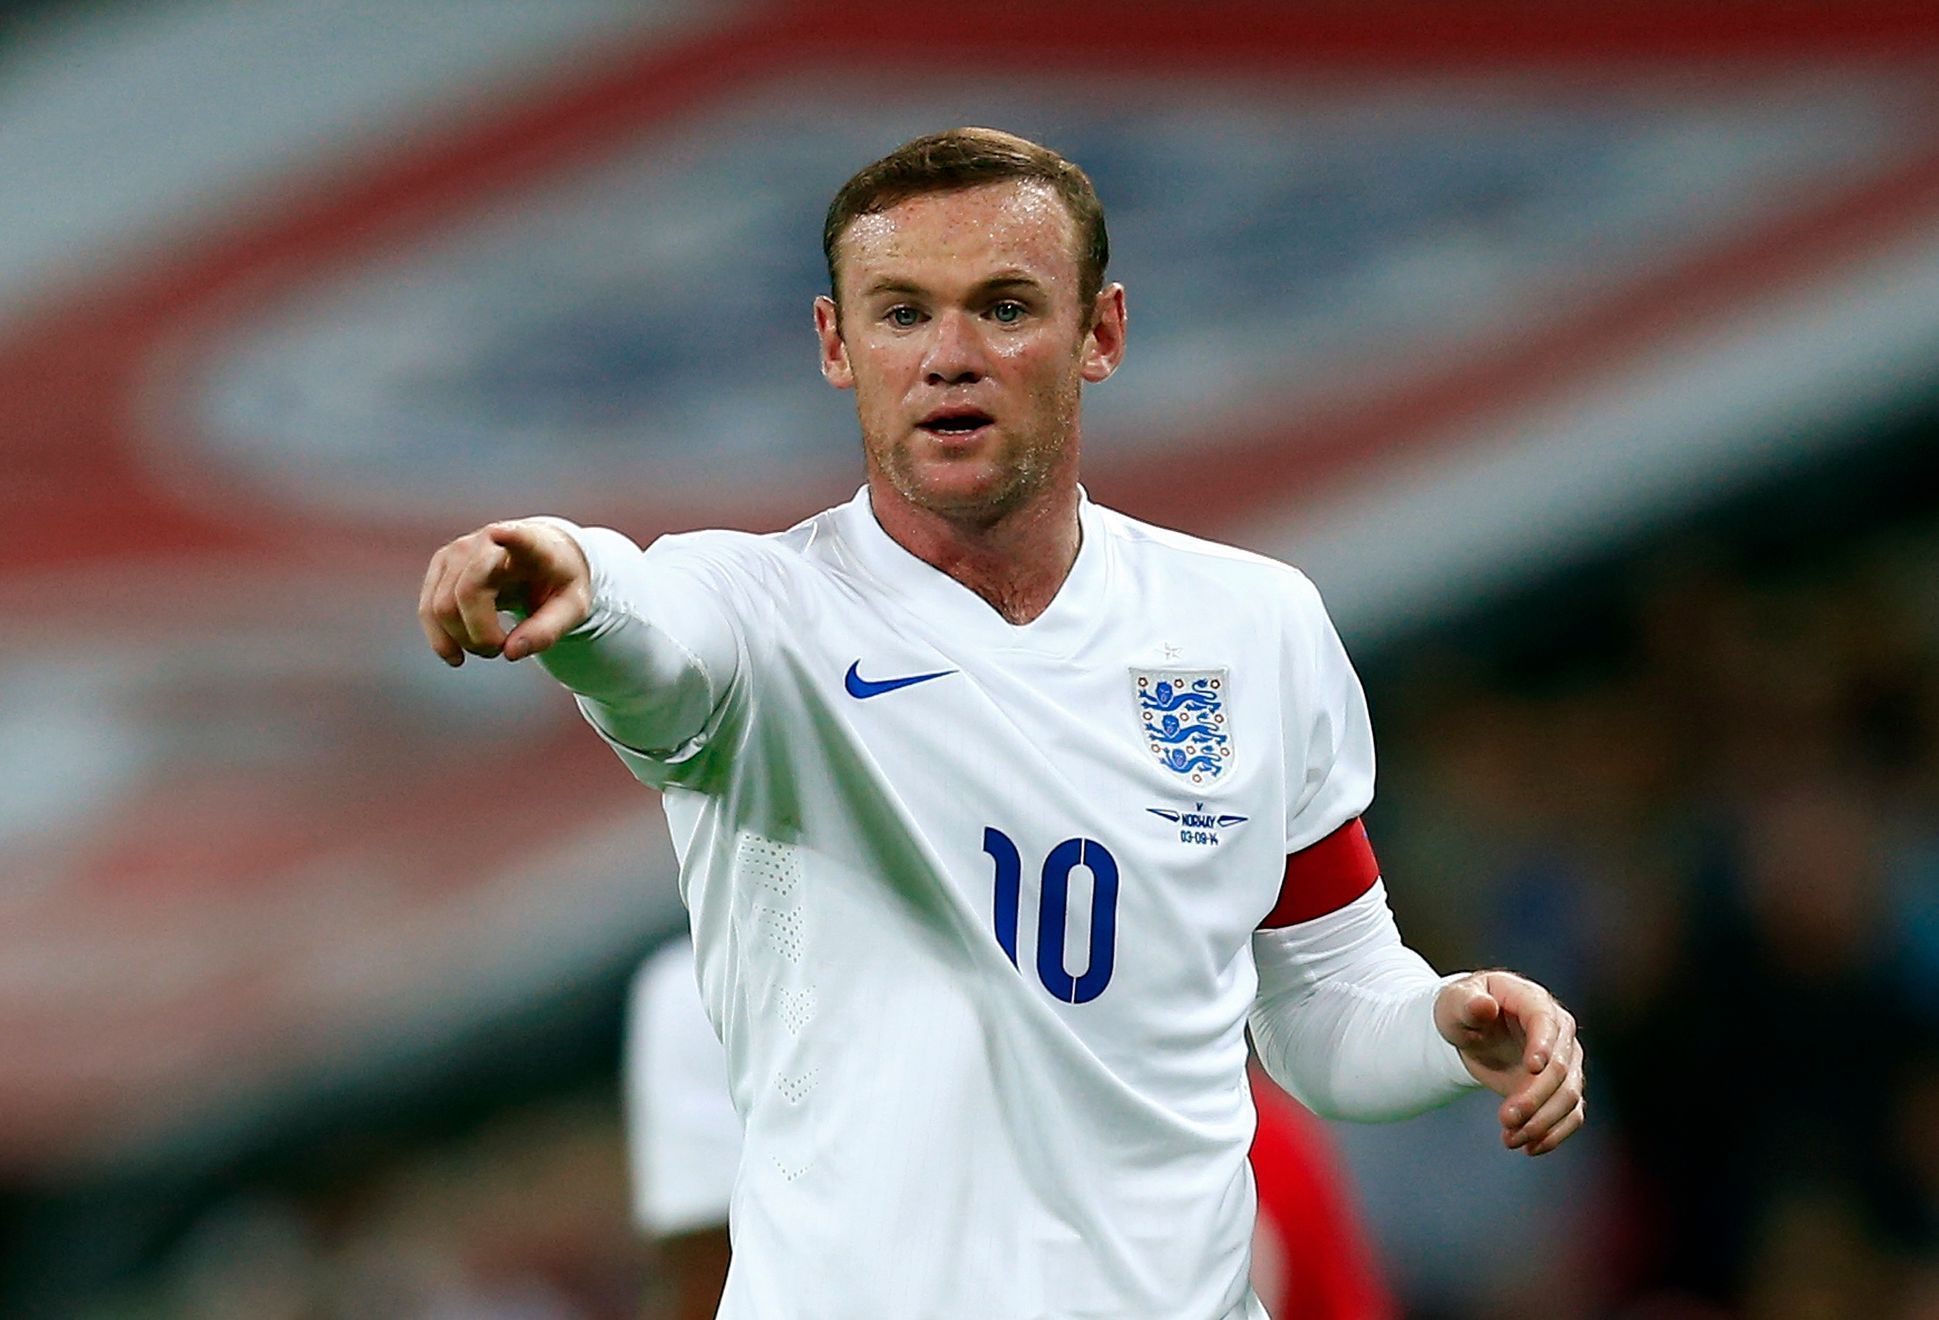 Wayne Rooney v přípravném utkání Anglie